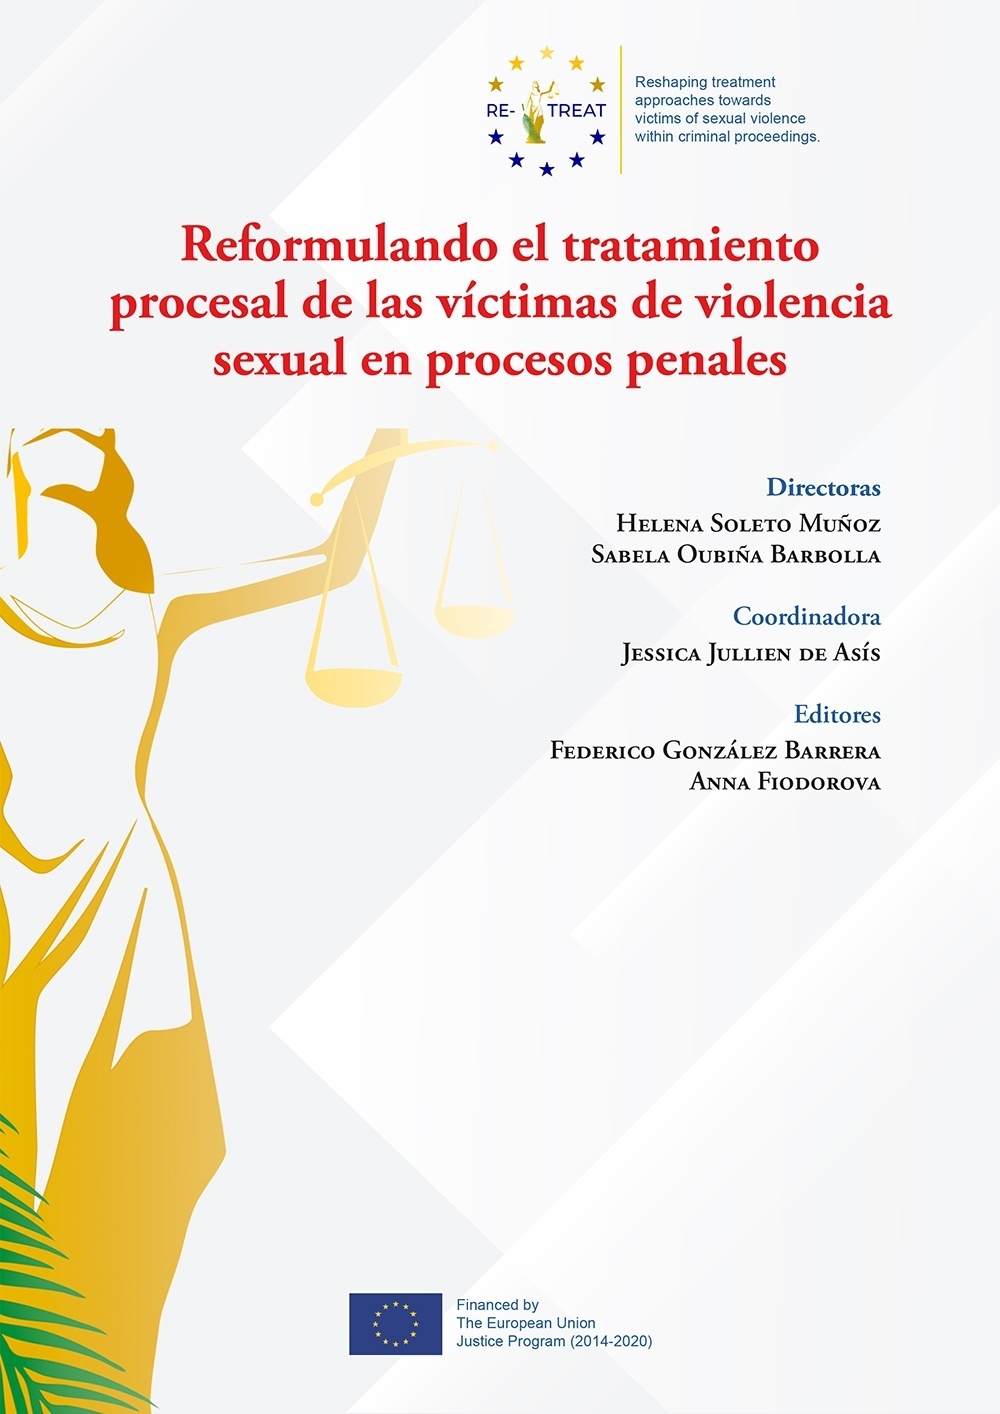 Reformulando el tratamiento procesal de las víctimas de violencia sexual en procesos penales